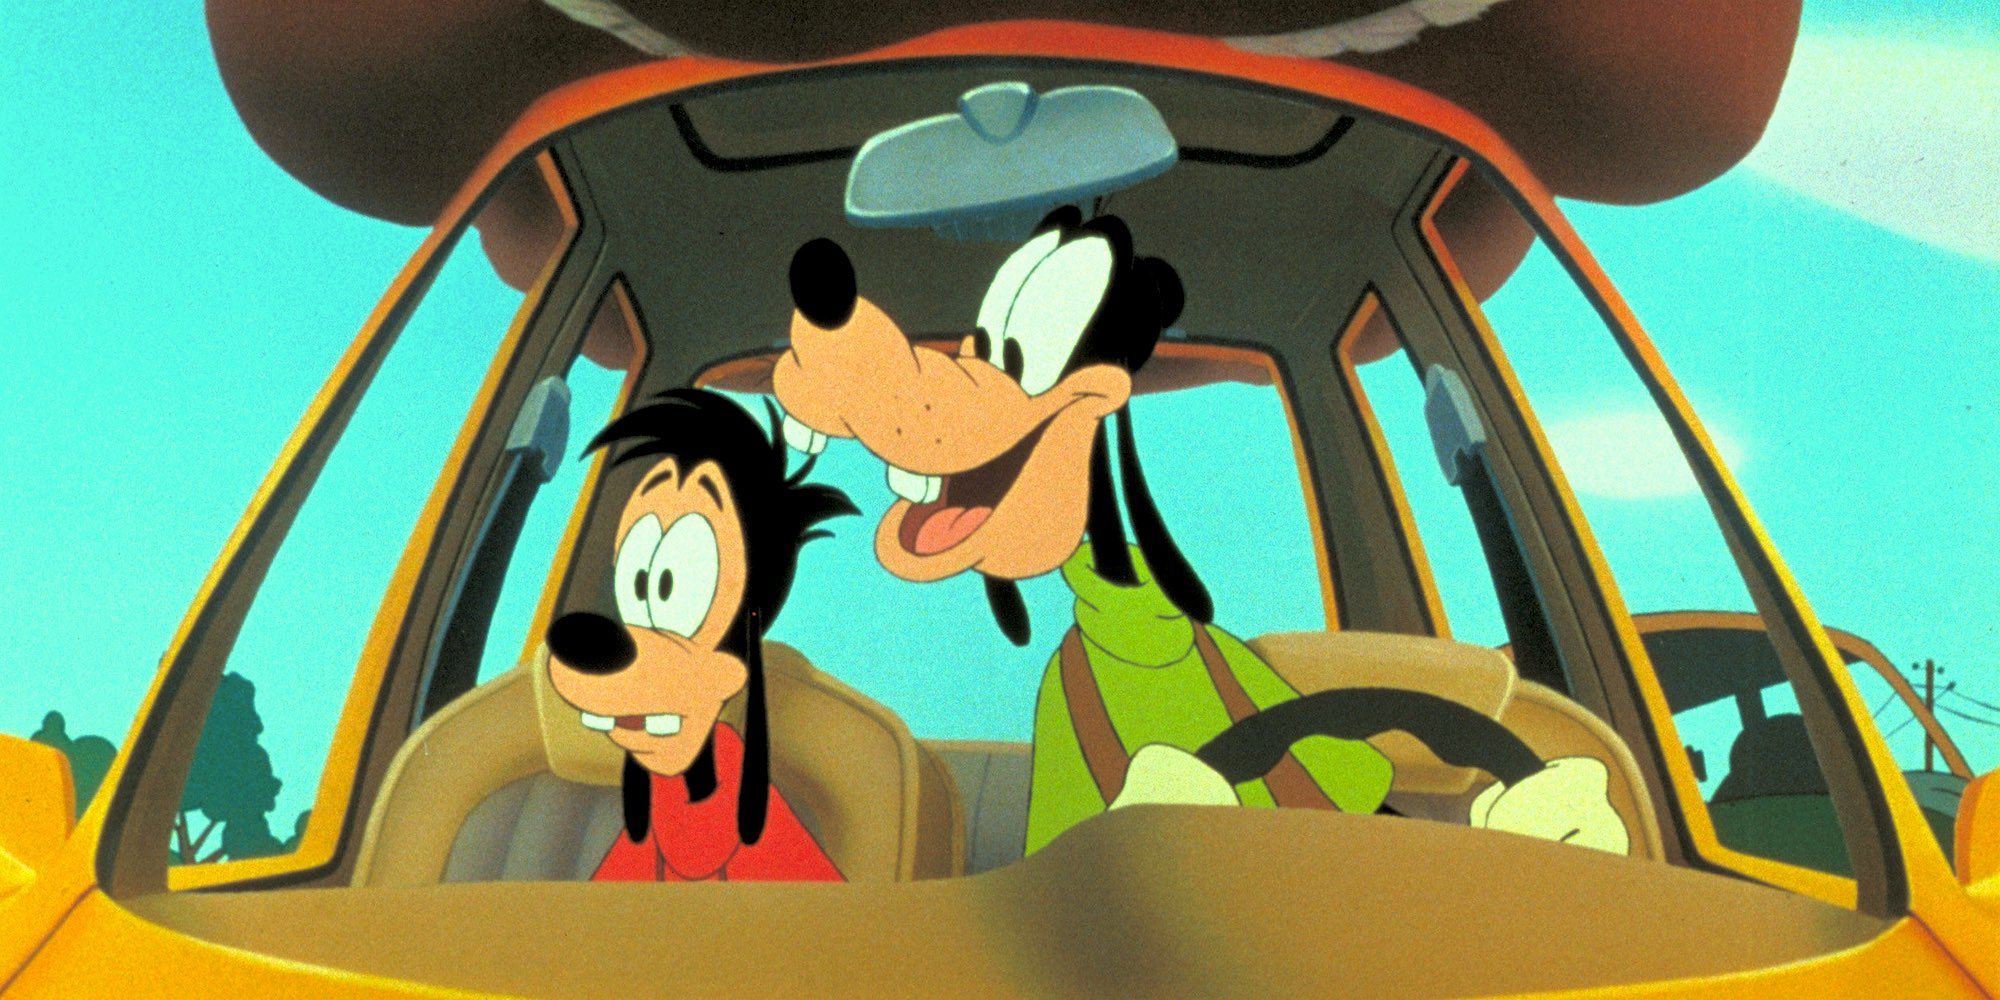 Tráiler honesto de la película Goofy: Los padres en la película de Disney no están muertos por una vez